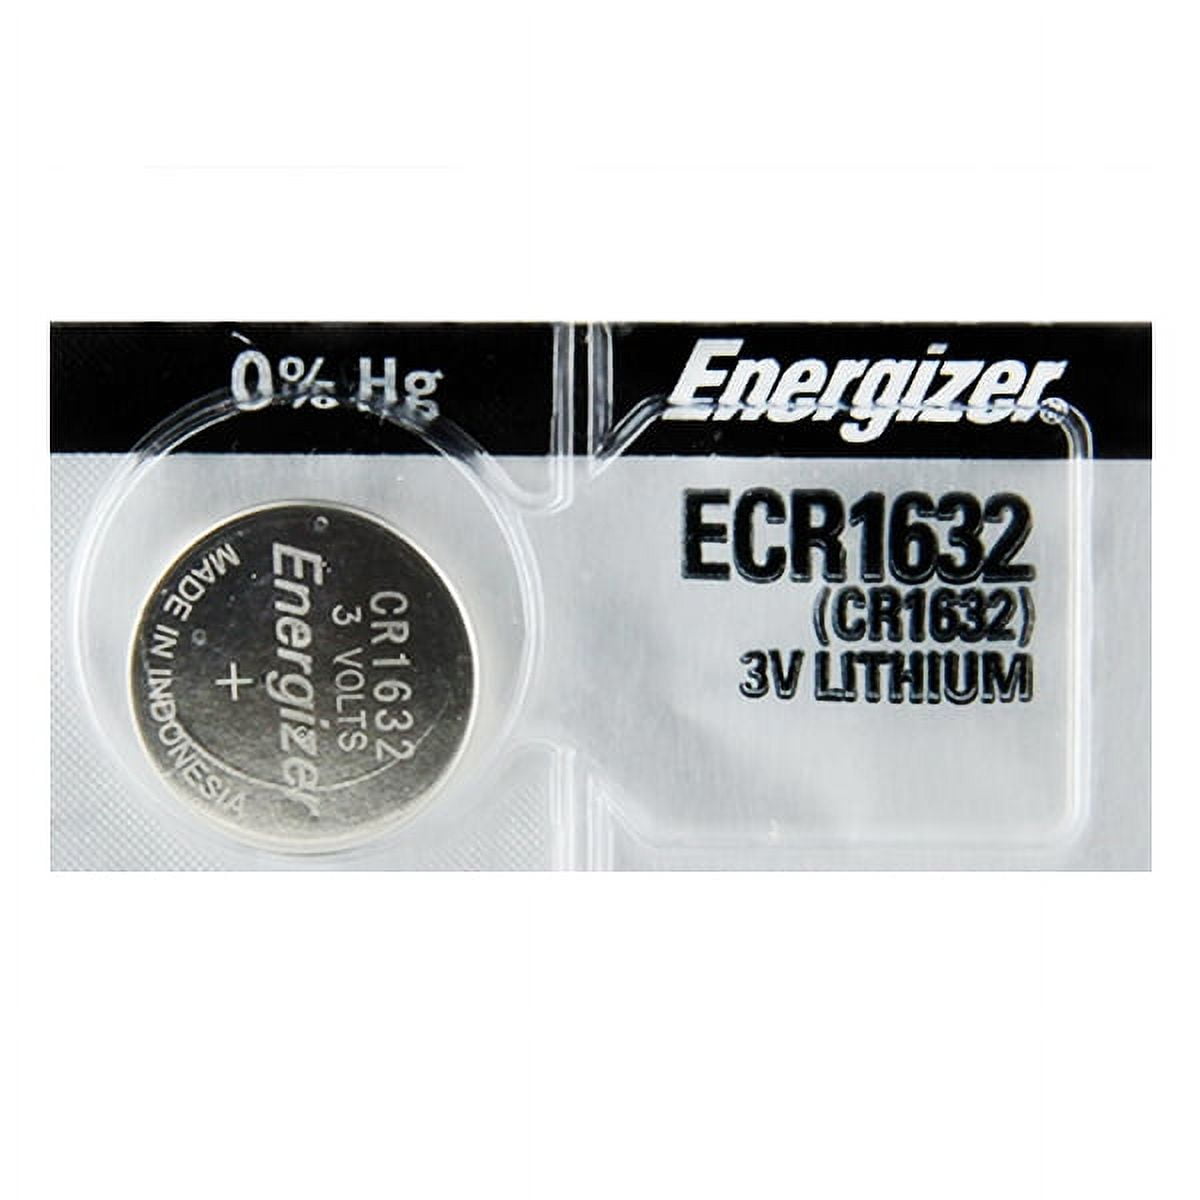 Energizer Batterie CR 1632 1 Piece